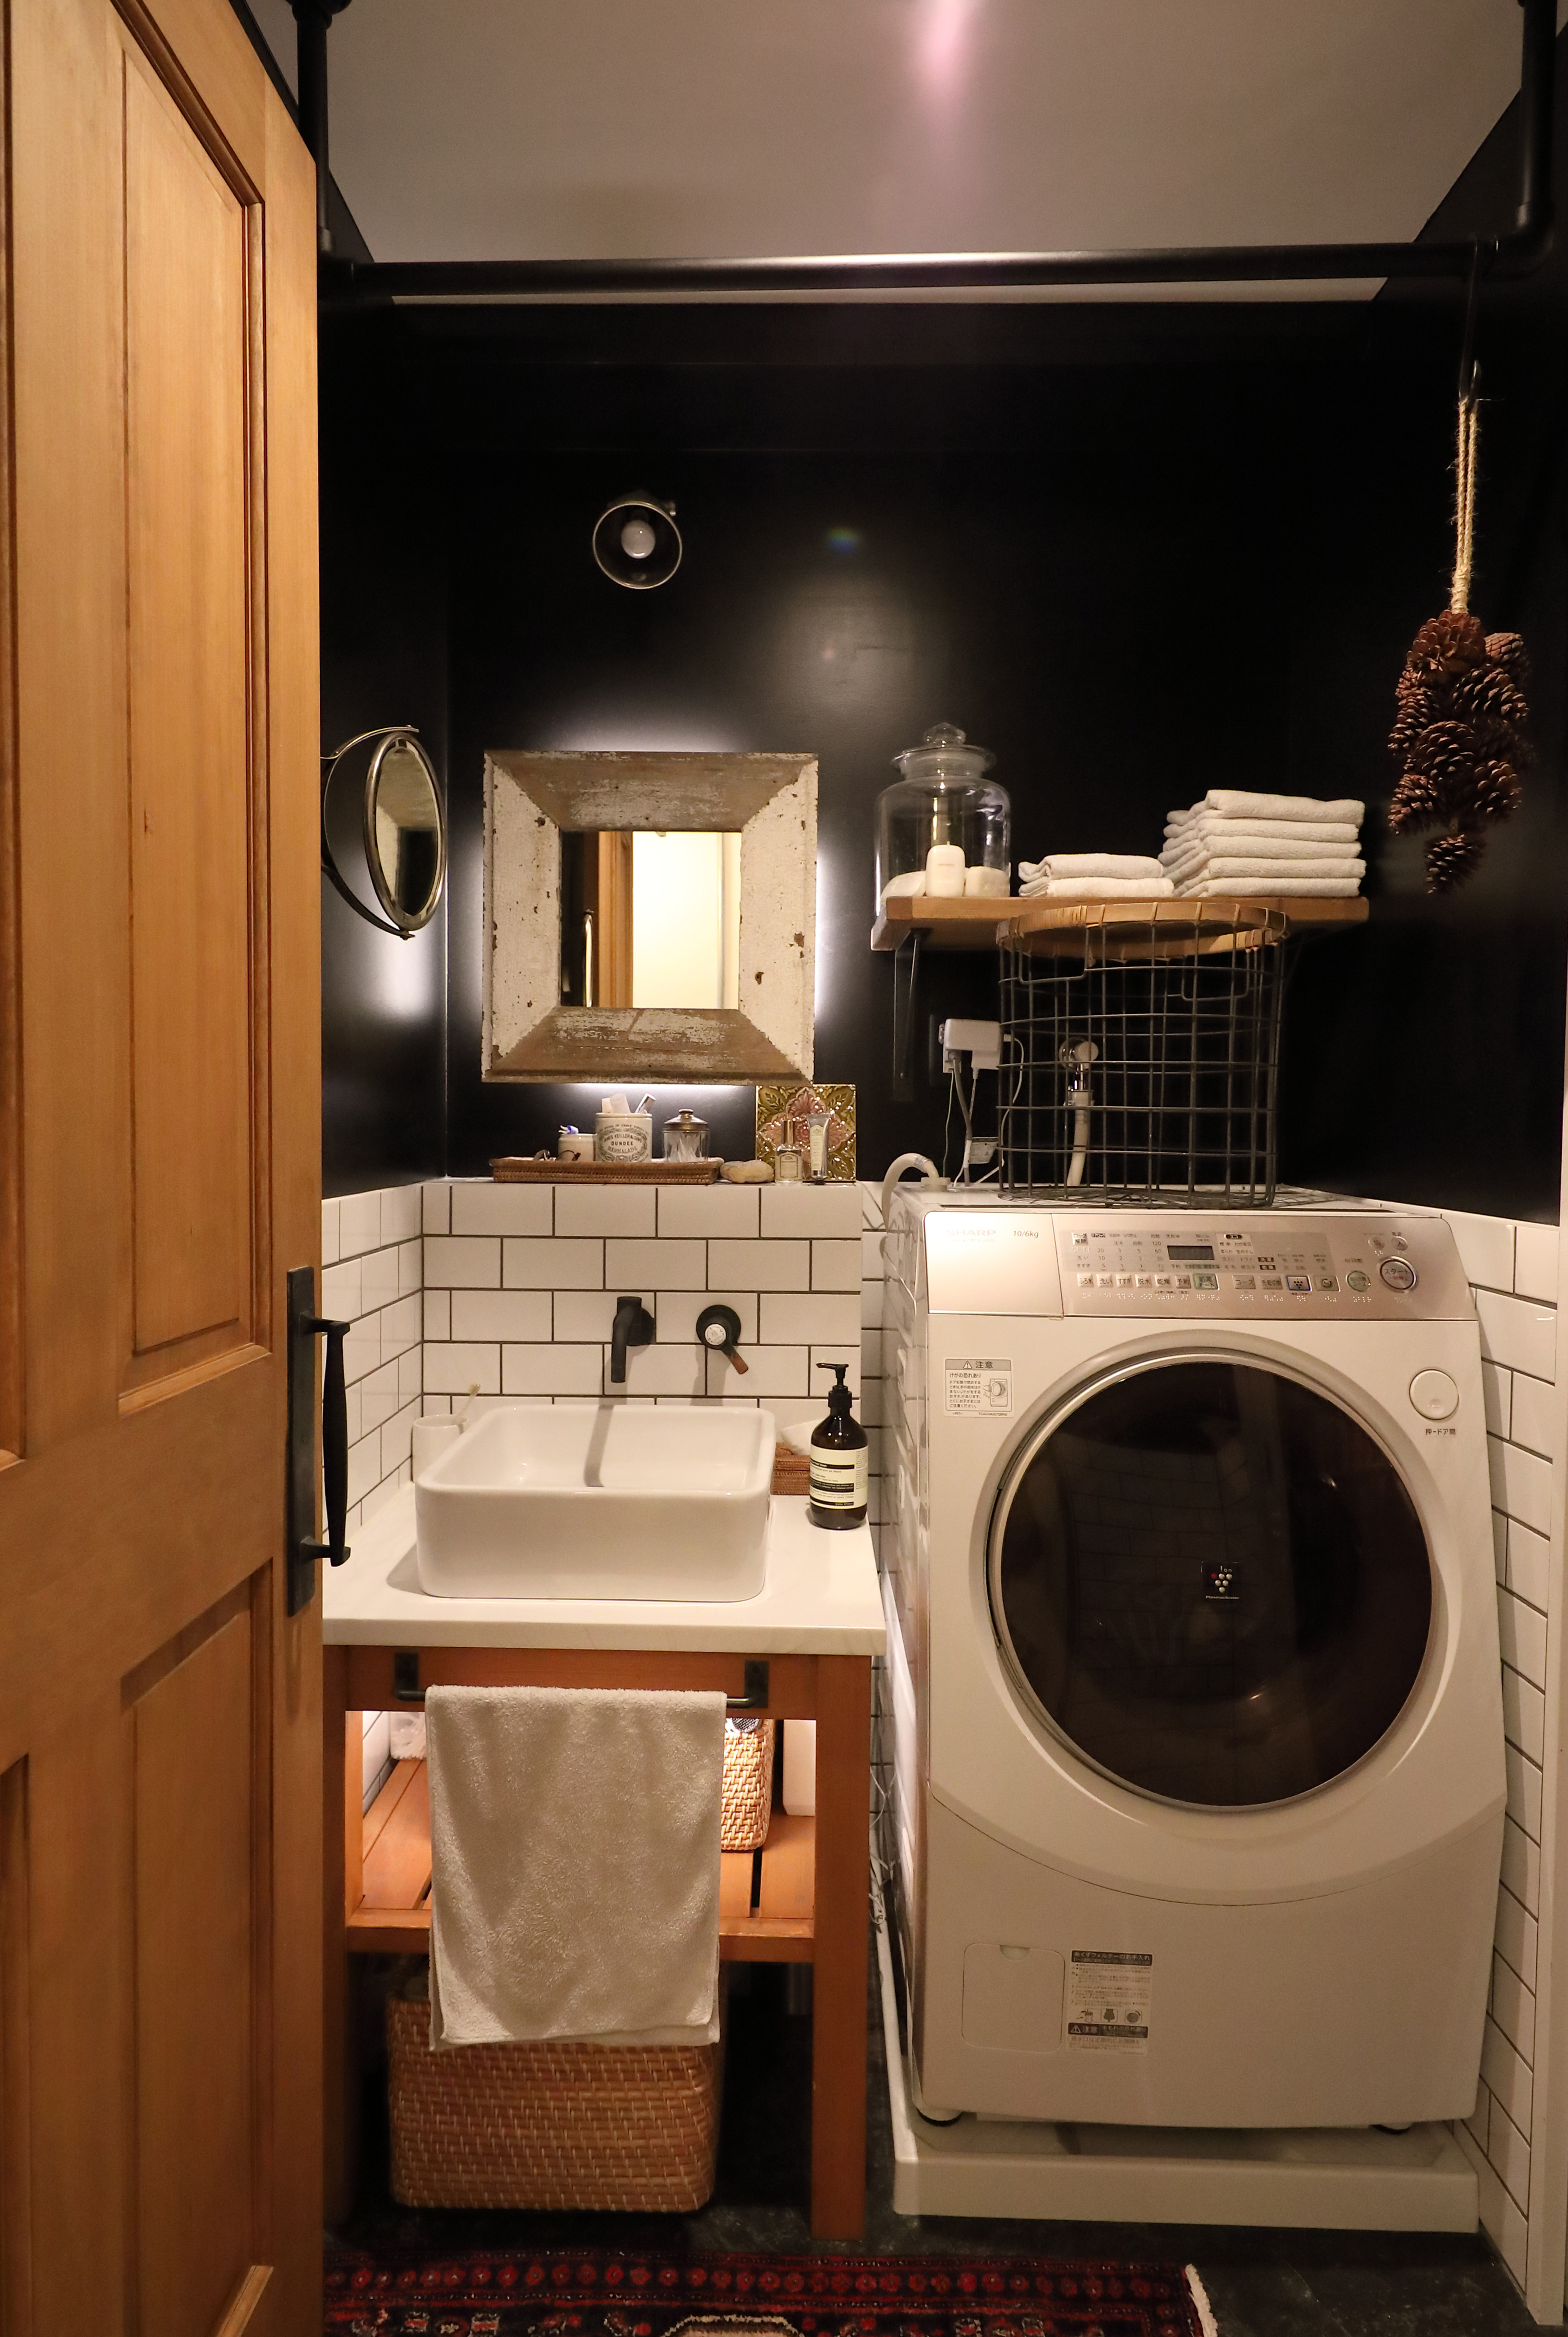 洗面所 脱衣所のおしゃれな壁紙リノベ実例 アクセントクロスの使い方と機能の選び方 リノベーションのshuken Re マンション 住宅 中古物件を リフォームやリノベで住みやすくデザインし施工します